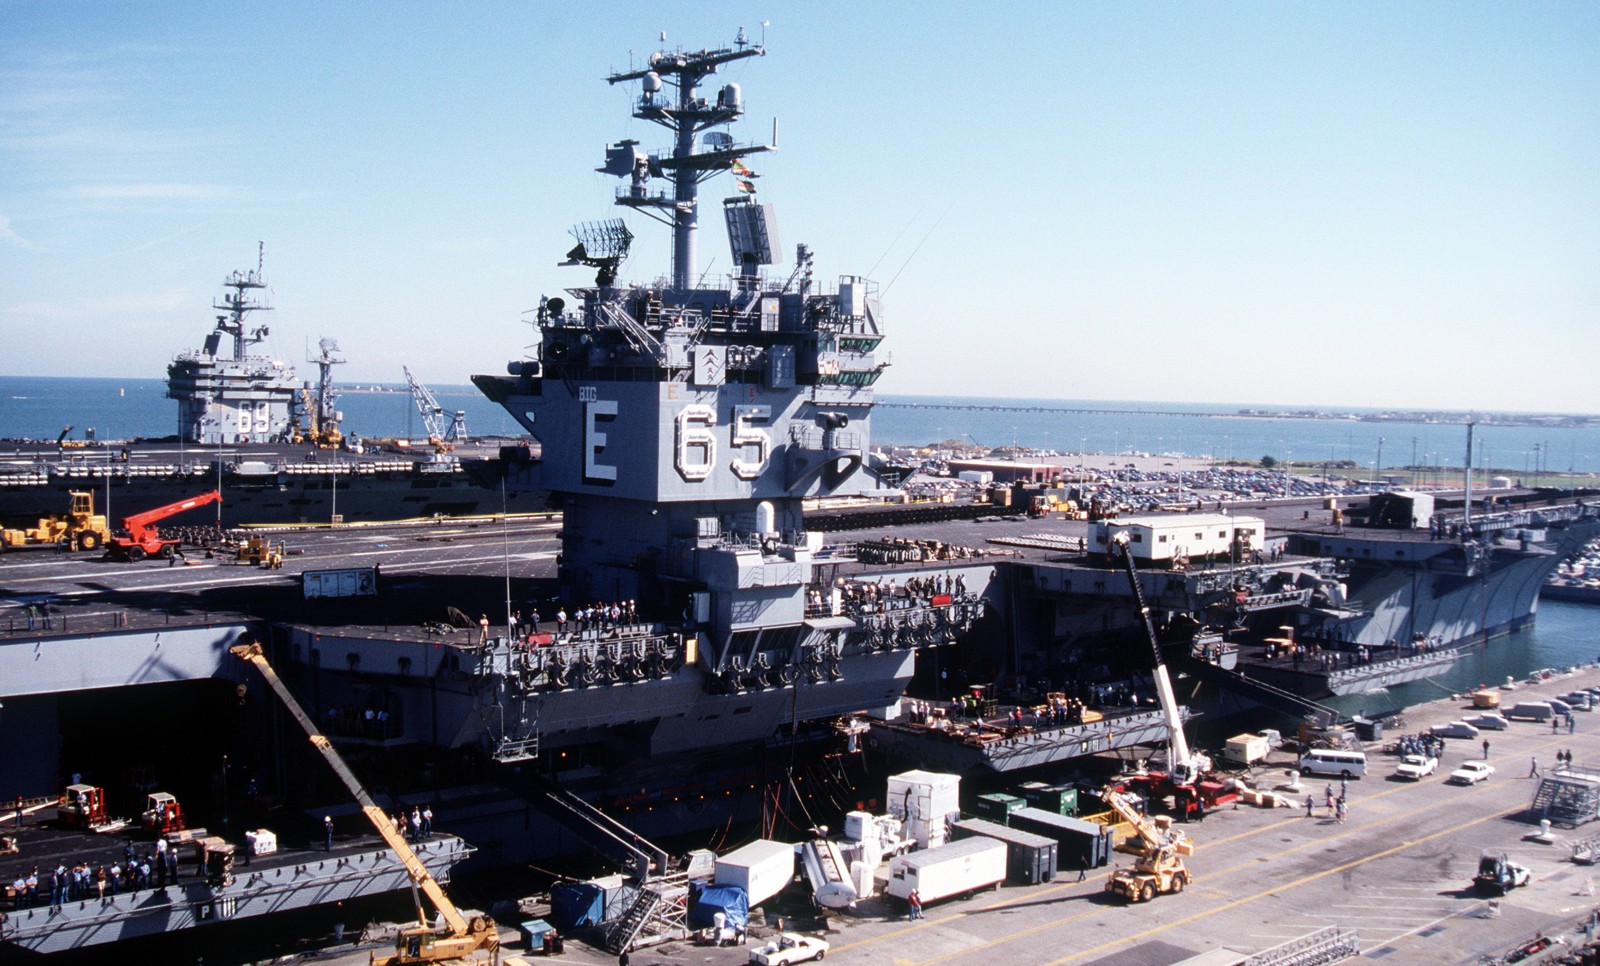 cvn-65 uss enterprise aircraft carrier us navy norfolk virginia 1990 97